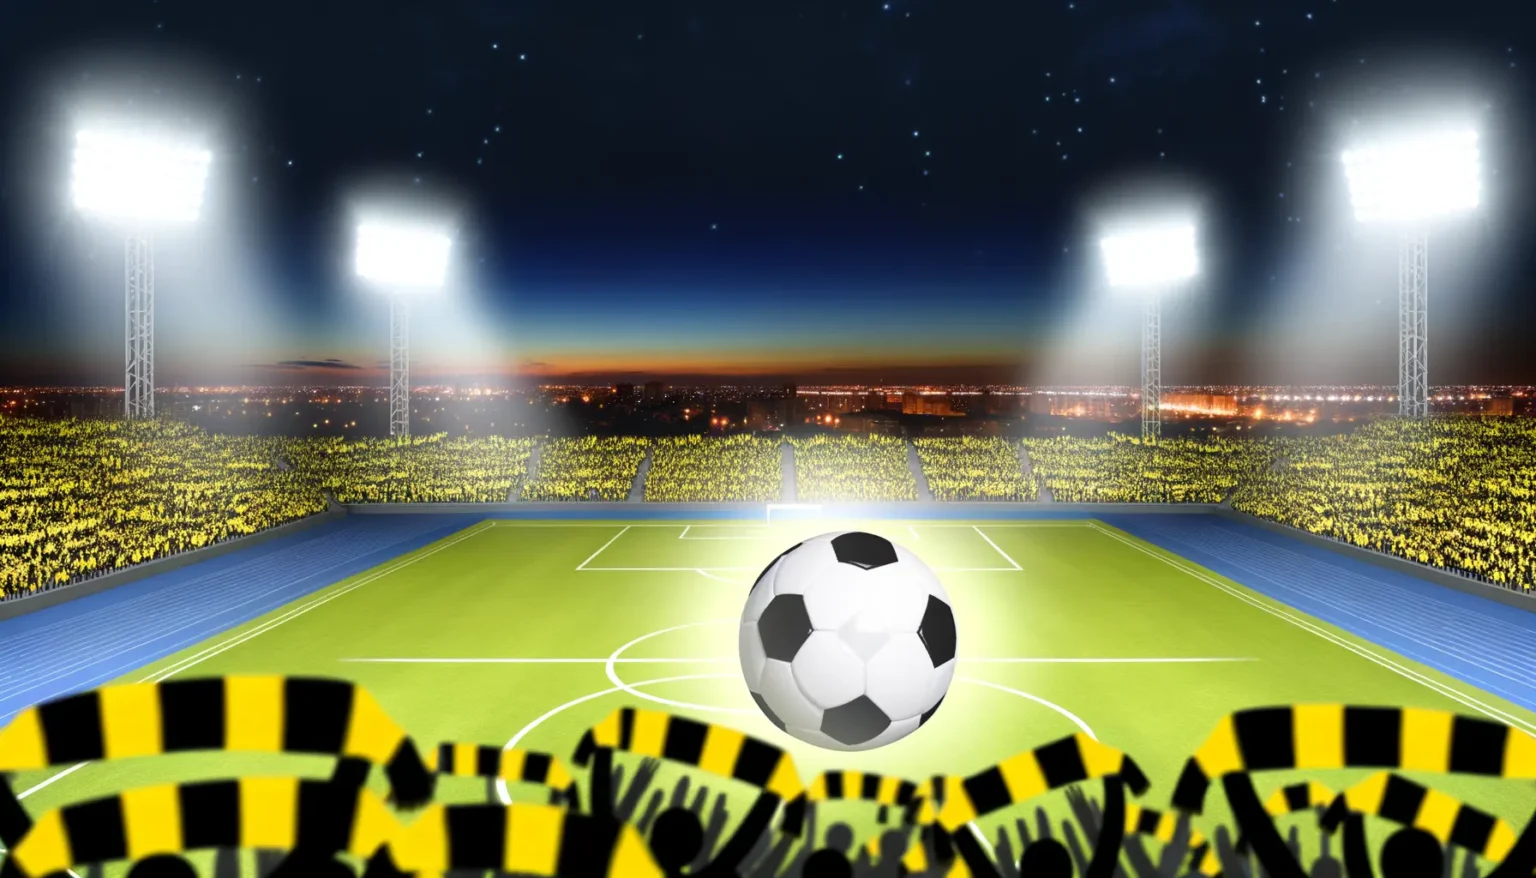 Beleuchtetes Fußballstadion bei Nacht mit einer großen Menschenmenge in gelben und schwarzen Farben, einem Fußball im Vordergrund und Scheinwerfern, die das Spielfeld hell erleuchten. Der Hintergrund zeigt einen Dämmerungshimmel über einer Stadtlandschaft.